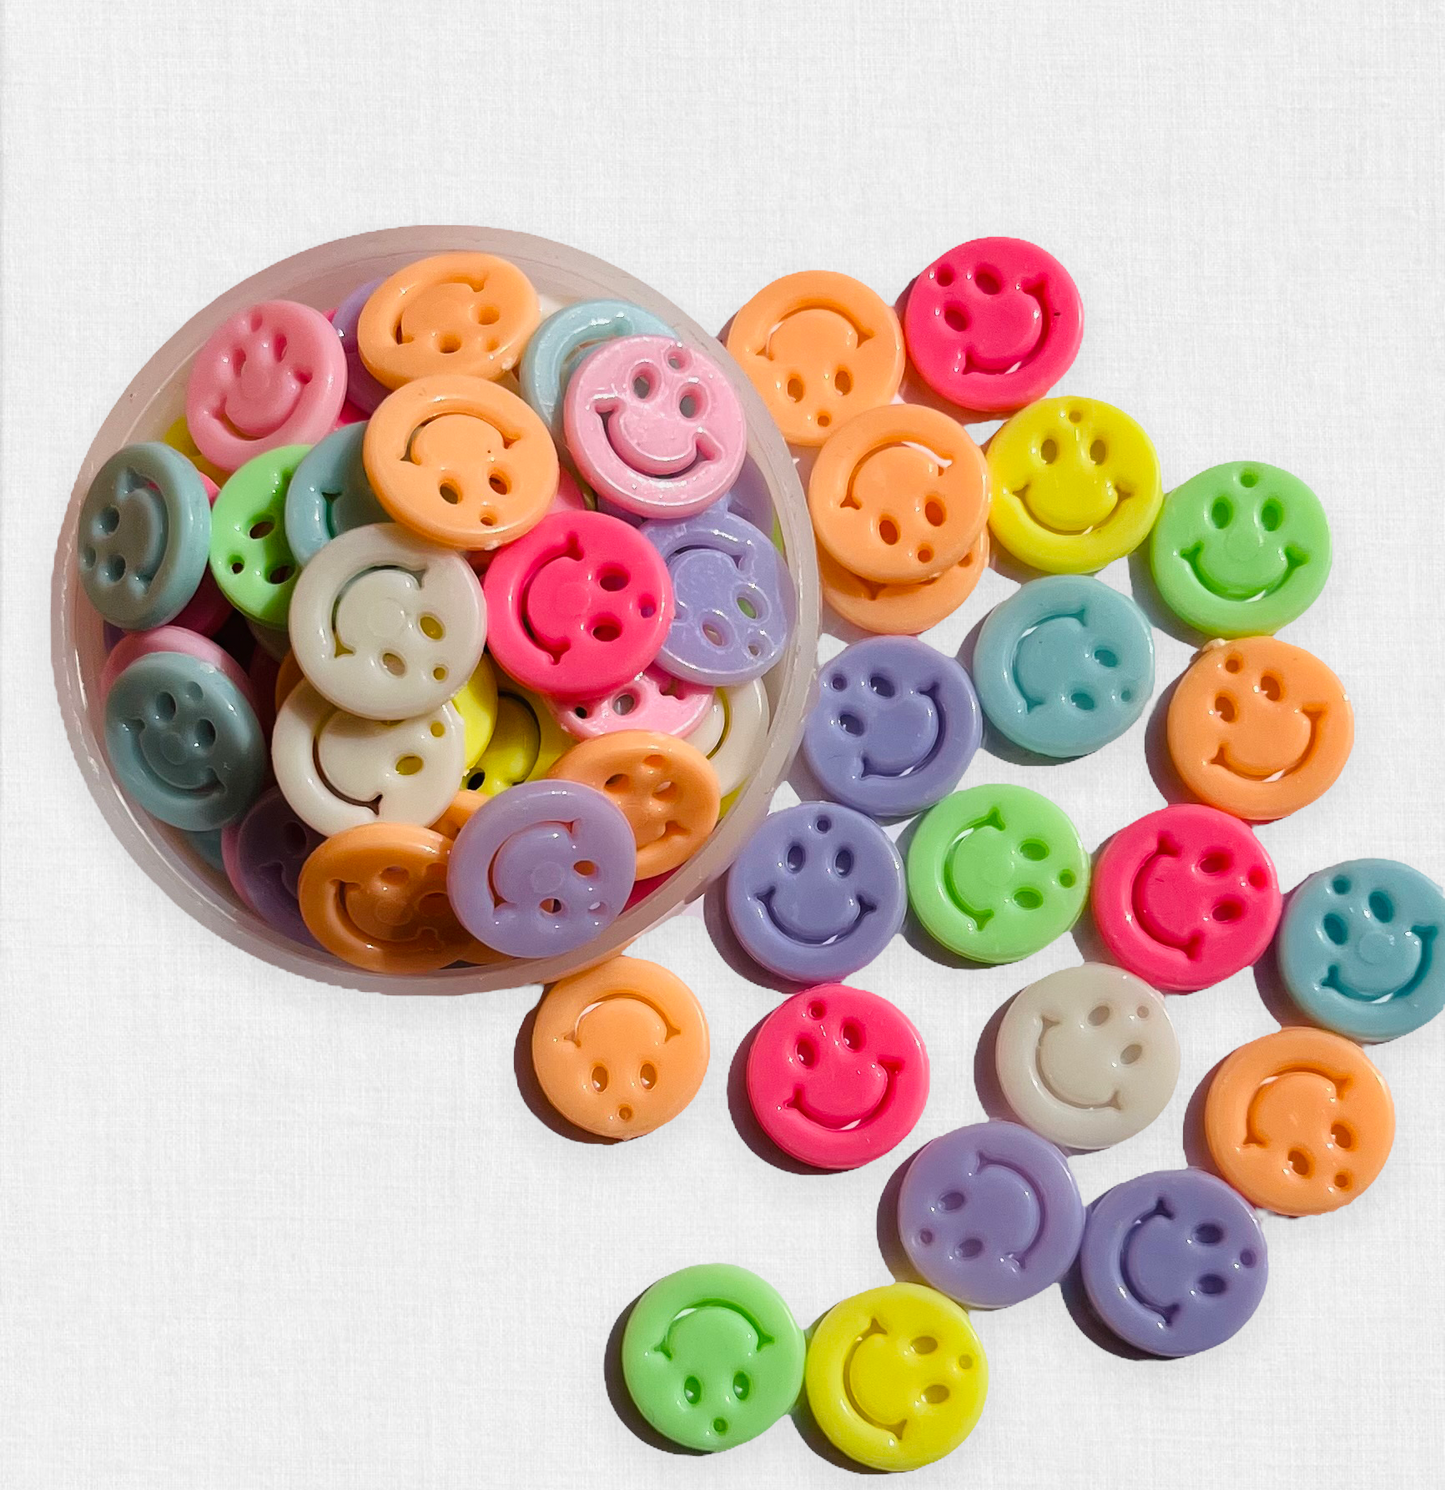 25 carita happy face plana de colores